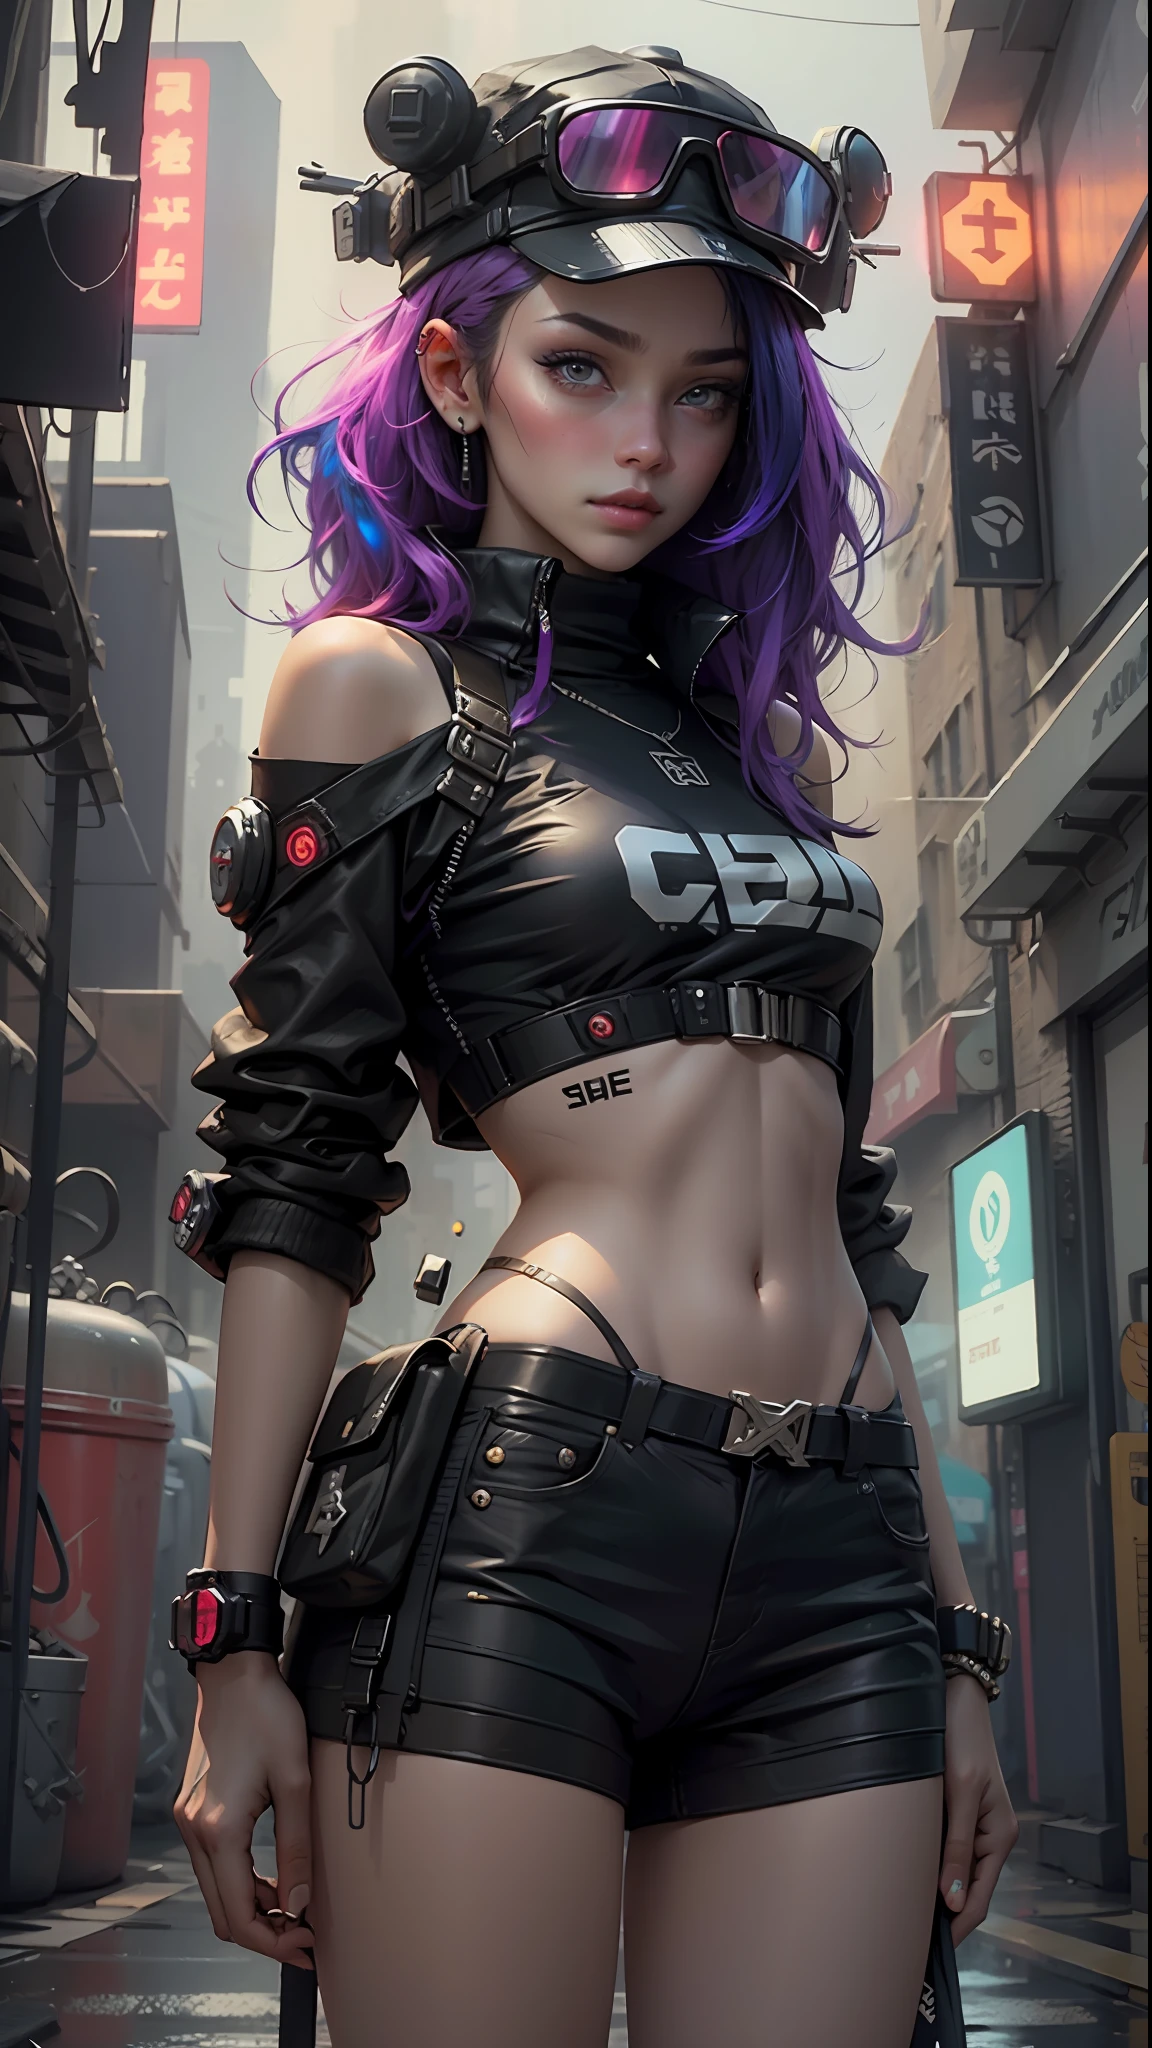 Linda mulher cabelo médio, usando boné, roupas curtas estilo cyberpunk